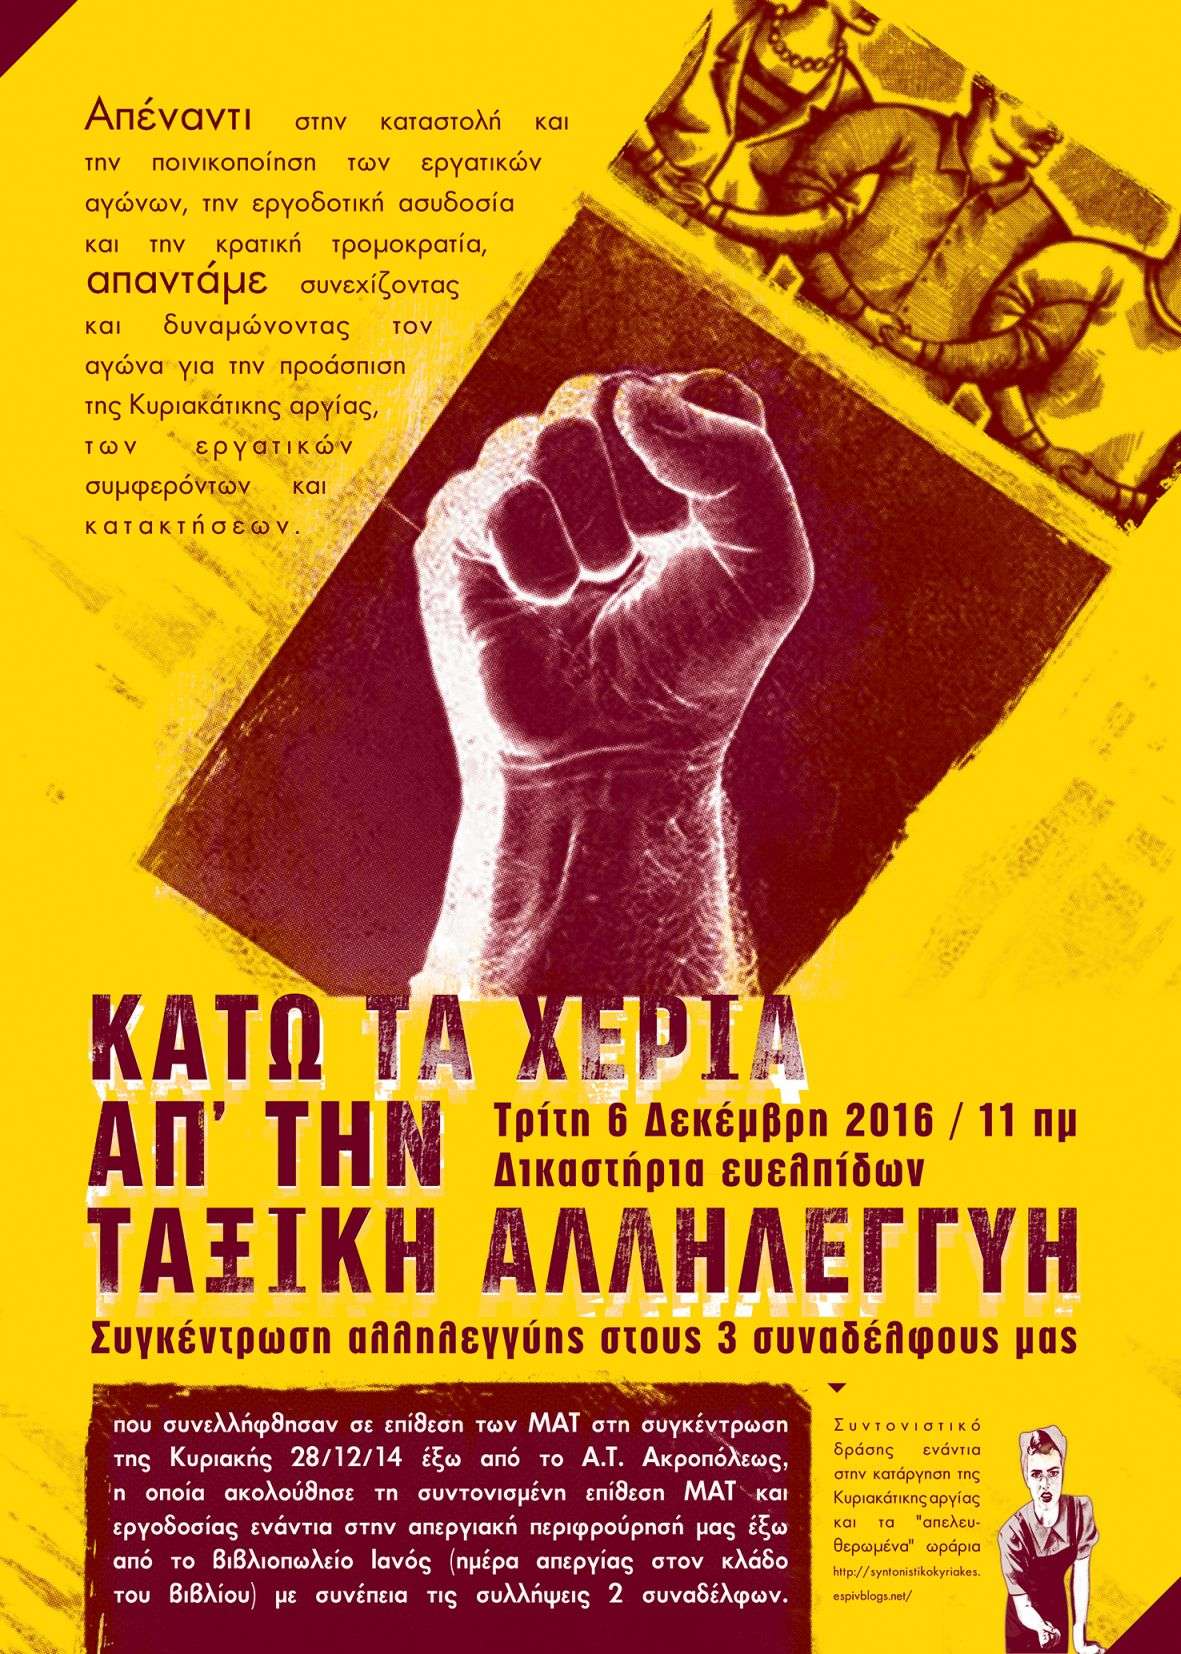 Αθήνα: Για τη δίκη (6/12/16) των 3 συναδέλφων/συλληφθέντων της απεργίας της Κυριακής 28/12/14